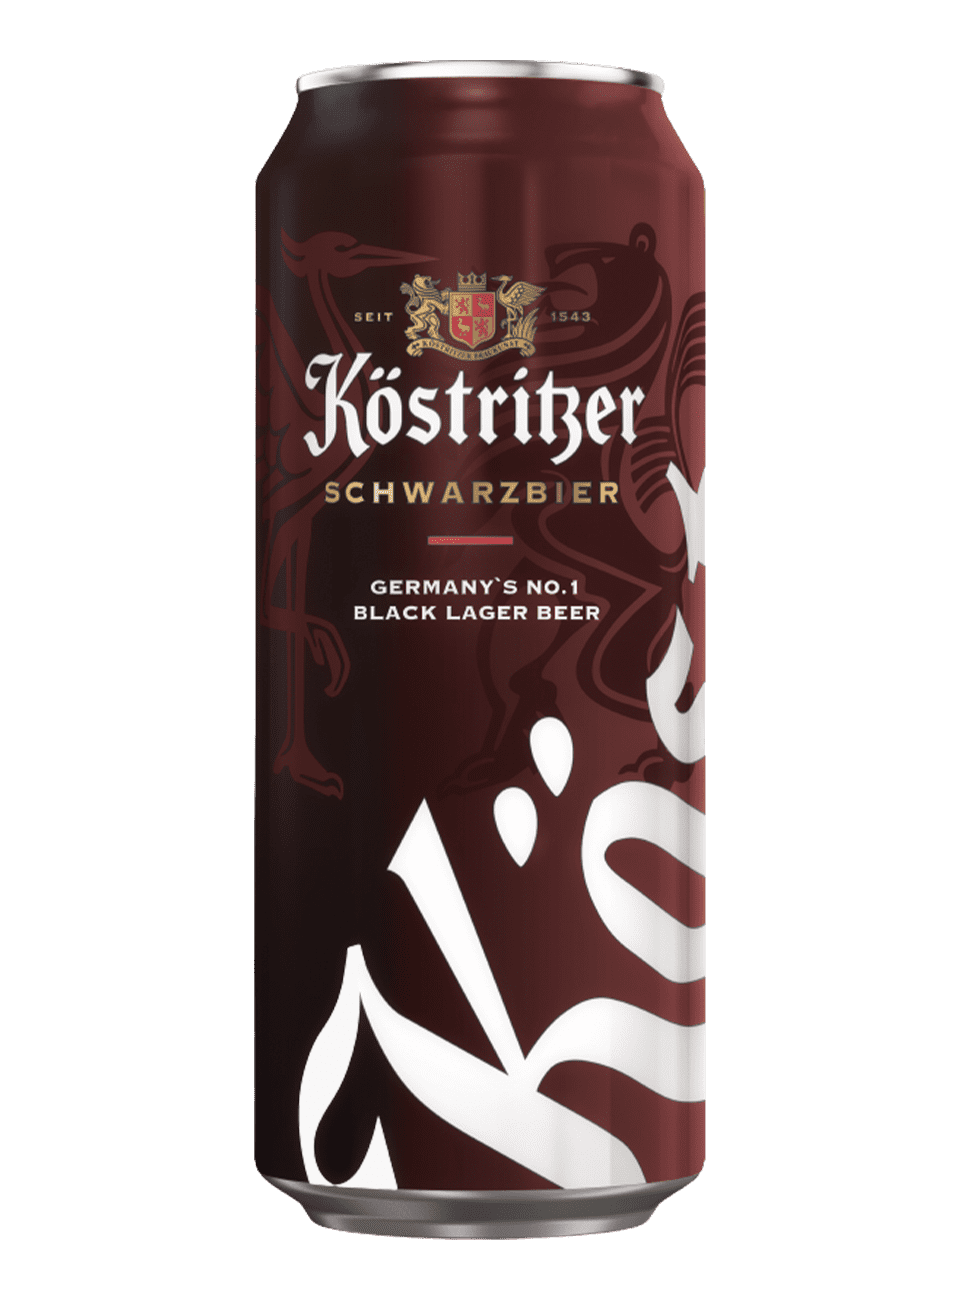 Пиво Кострицер Шварцбир 0,5л ж/б 4,8% темное пастер. фильтр. (24/0)